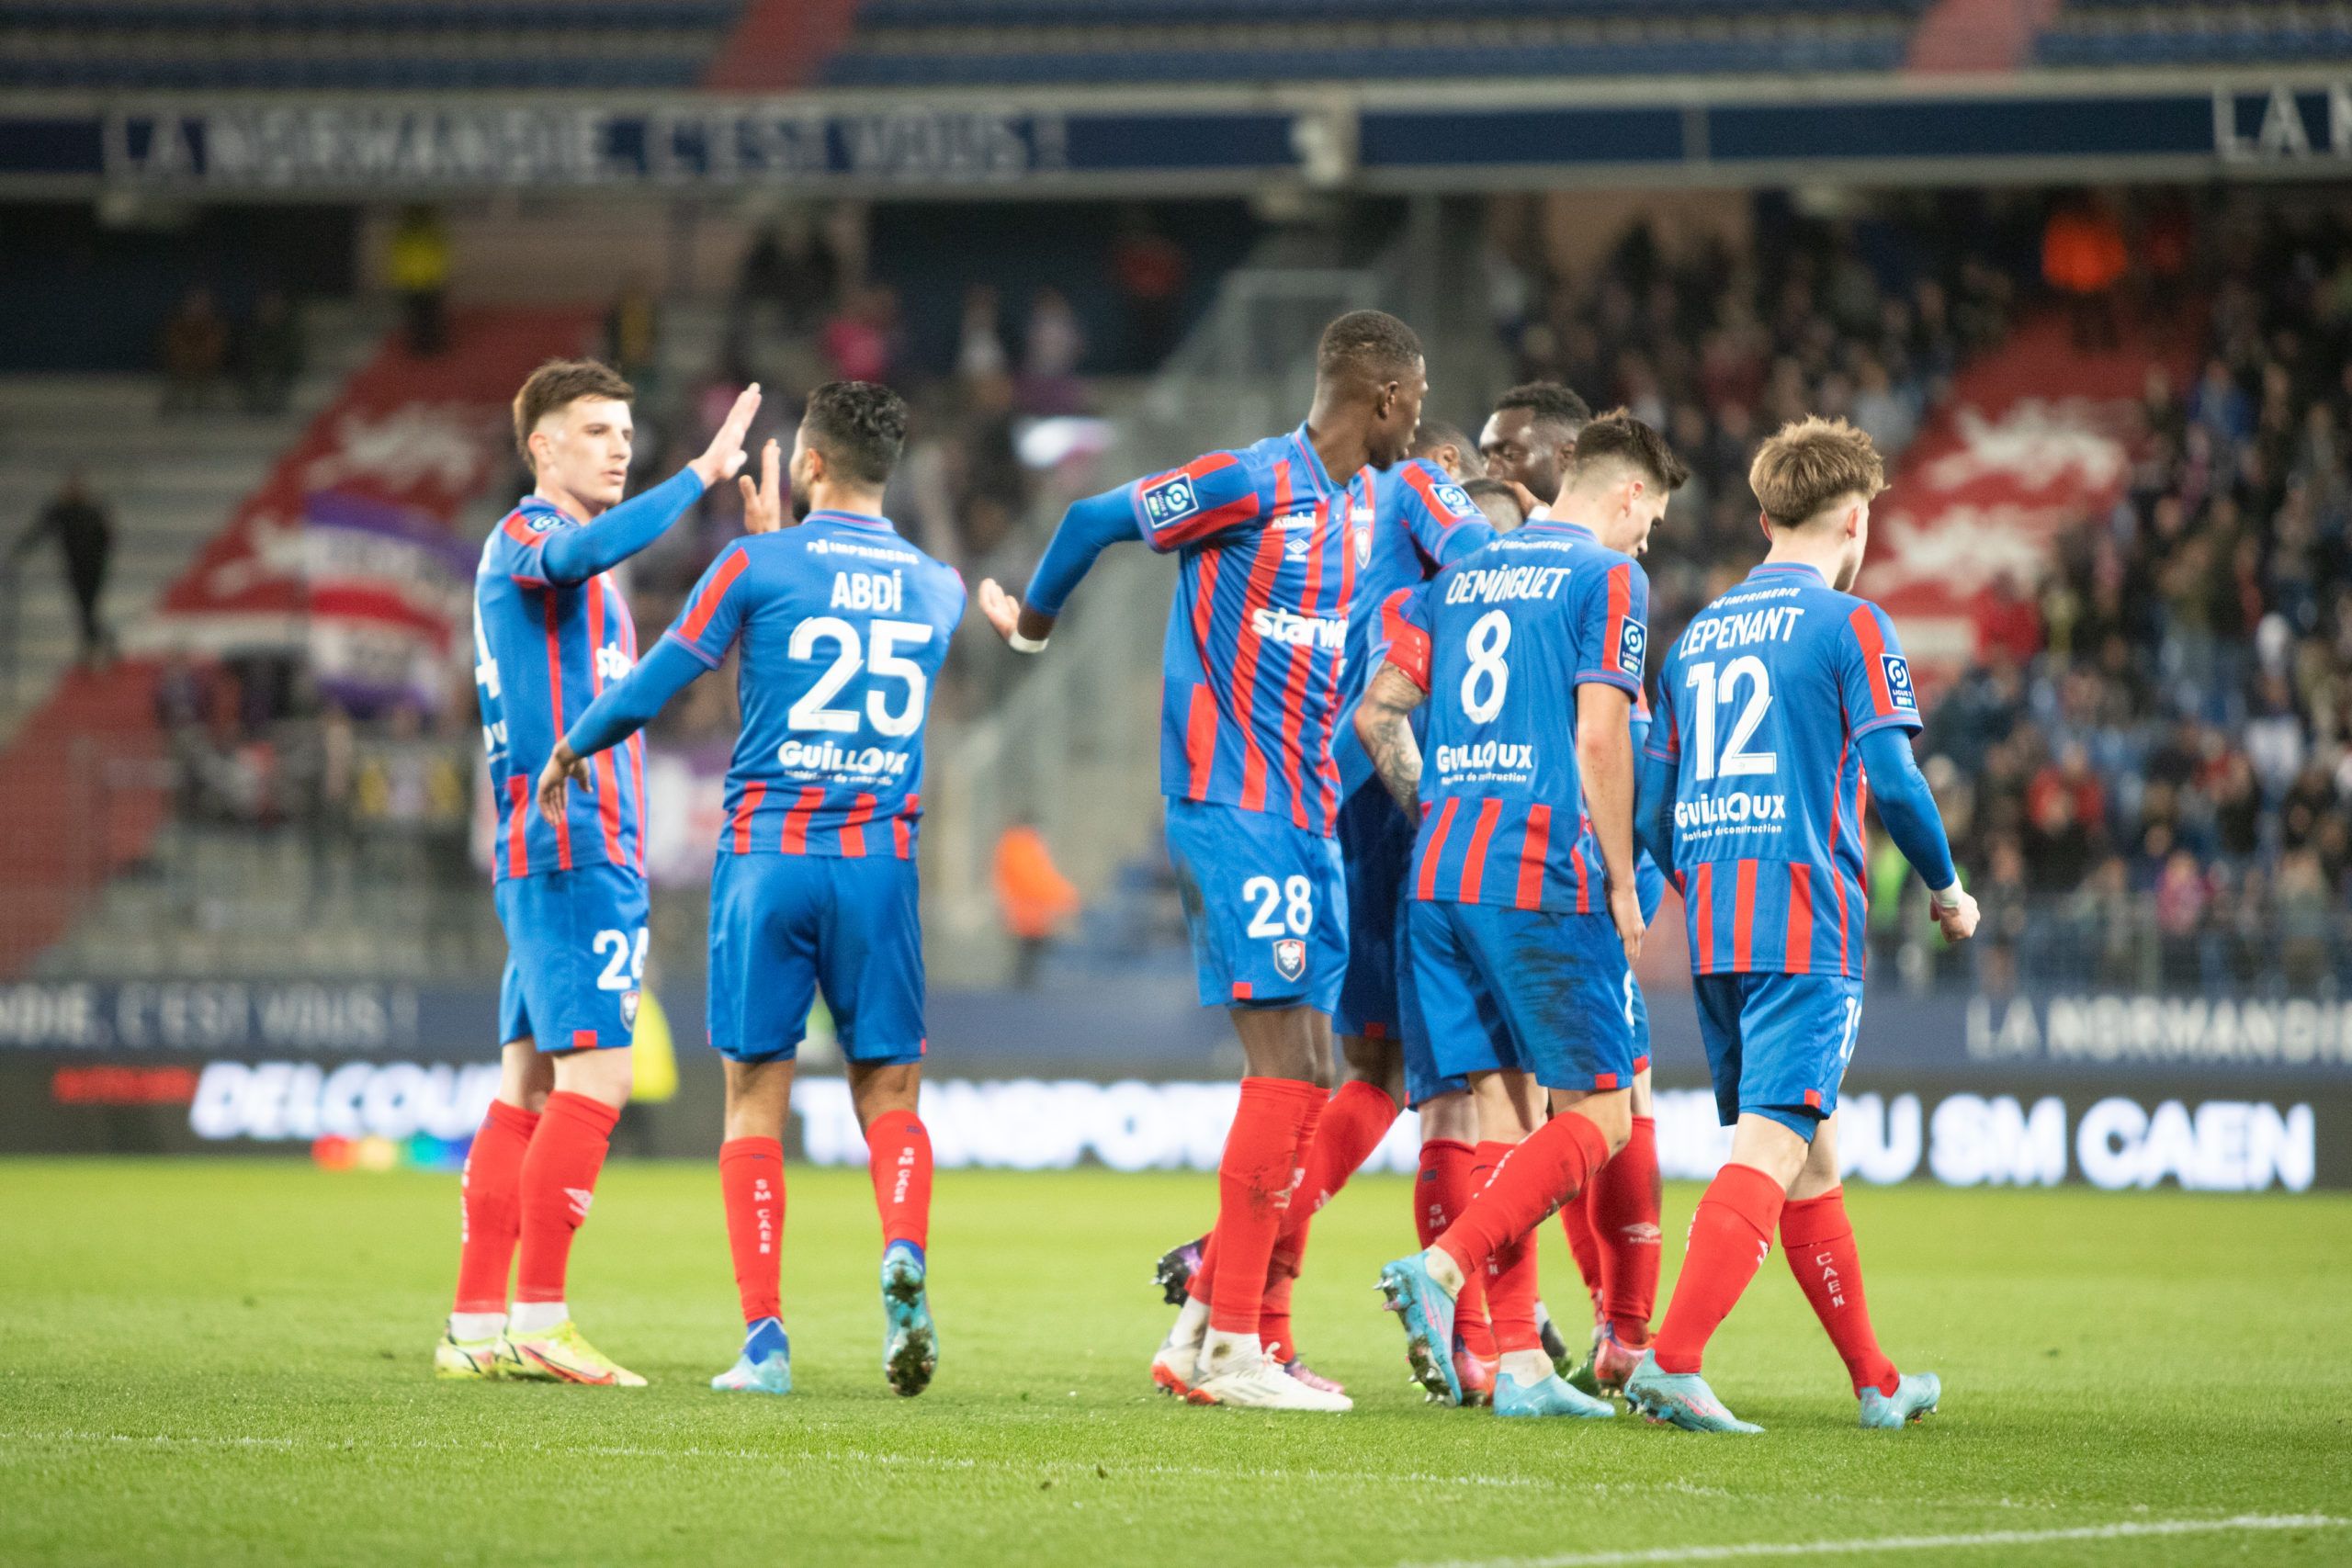 Paris FC – Caen : les compositions probables selon la presse